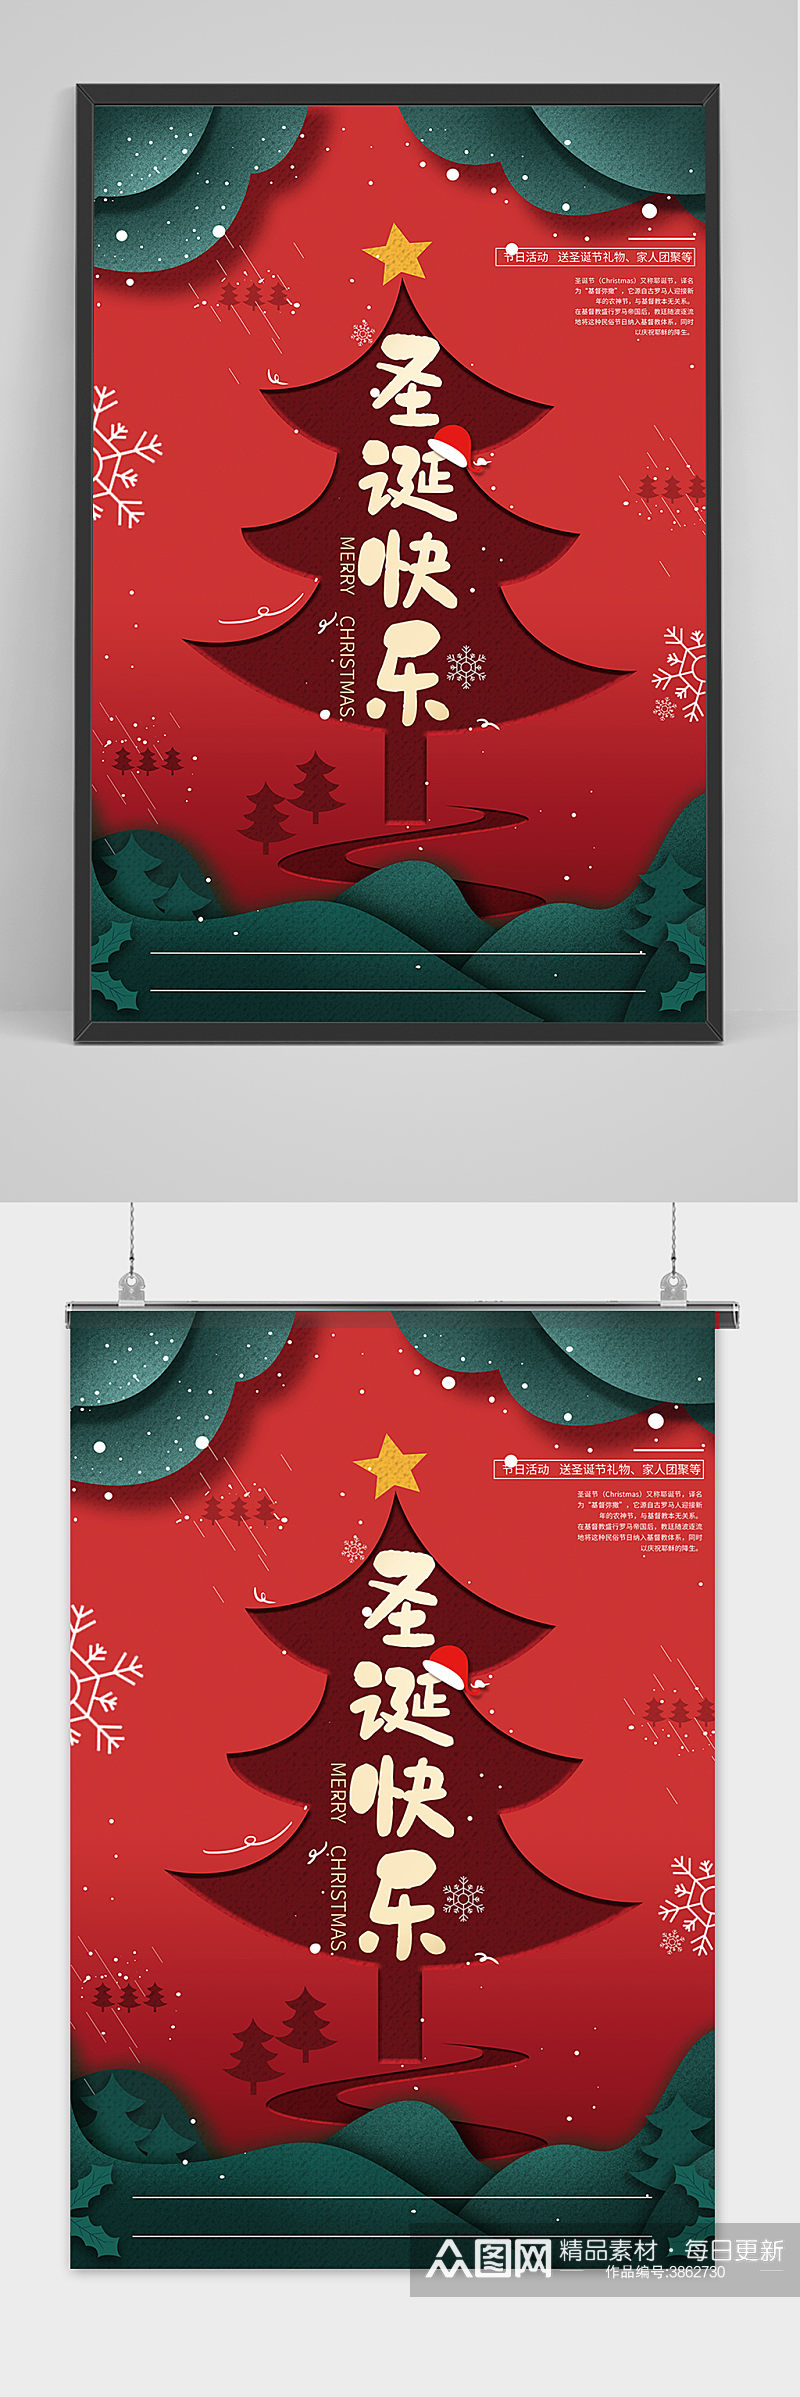 红色可爱剪纸风圣诞树圣诞节海报素材